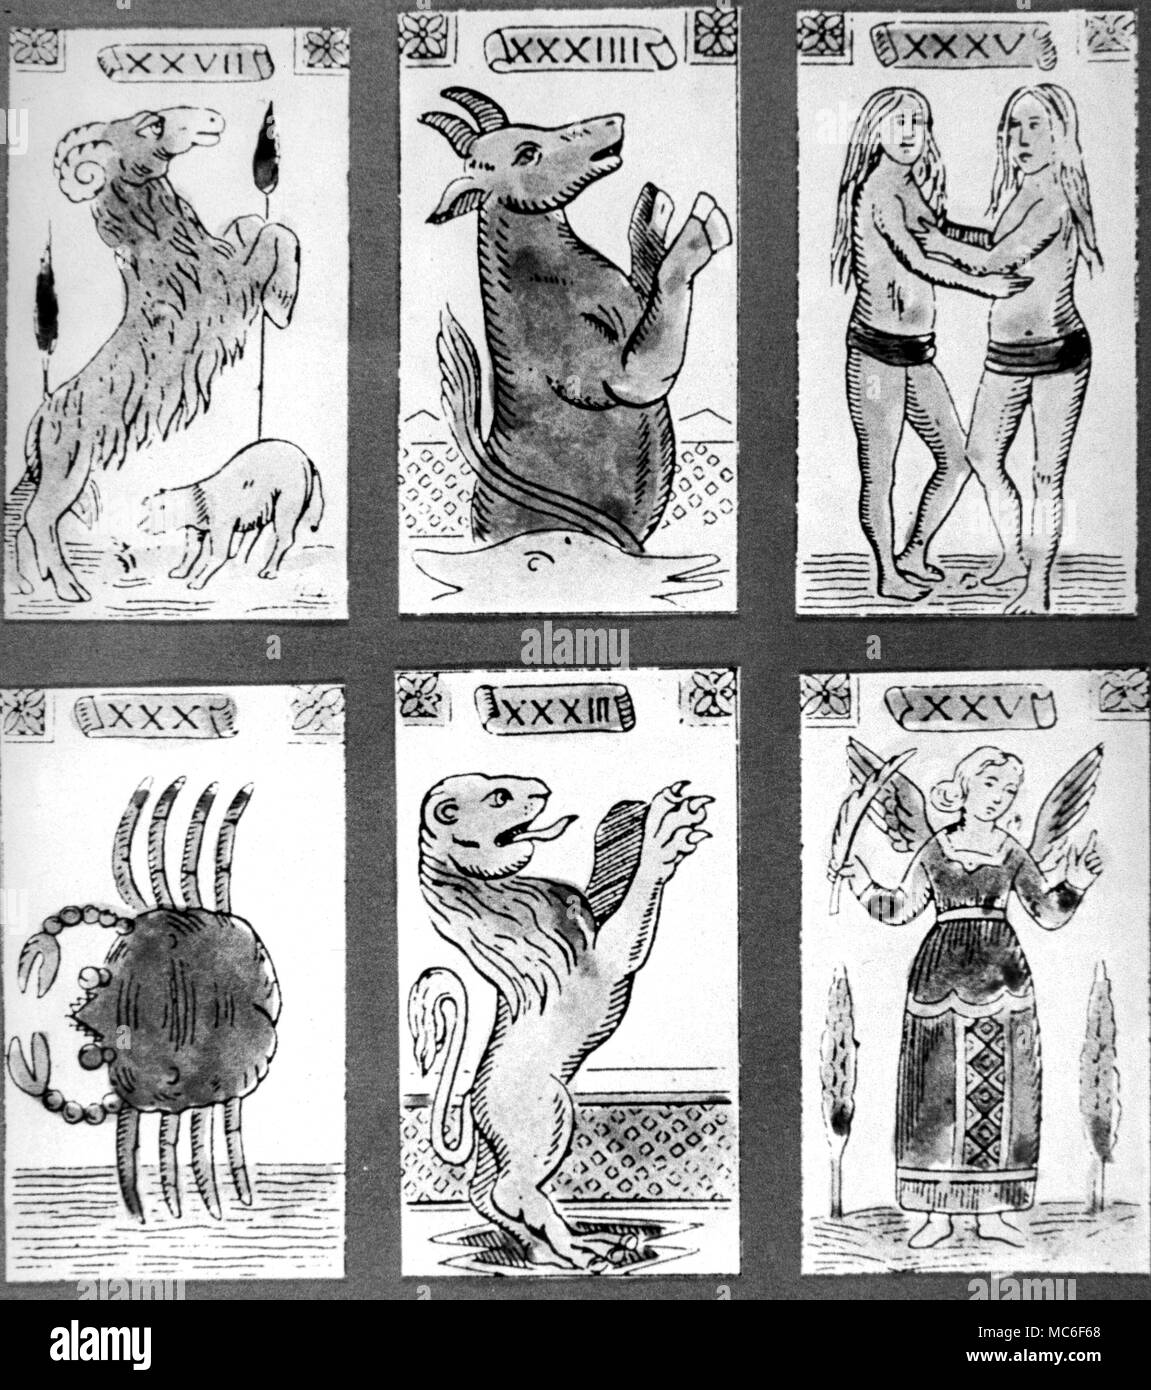 6 cartes de l'Italien Minchiate design. Ce sont les six premières cartes du zodiaque, de gauche à droite, Bélier, Taureau, Gémeaux, Cancer, Lion et vierge. Leur nombre ne correspond pas à leur séquence dans le pack, cependant. Banque D'Images